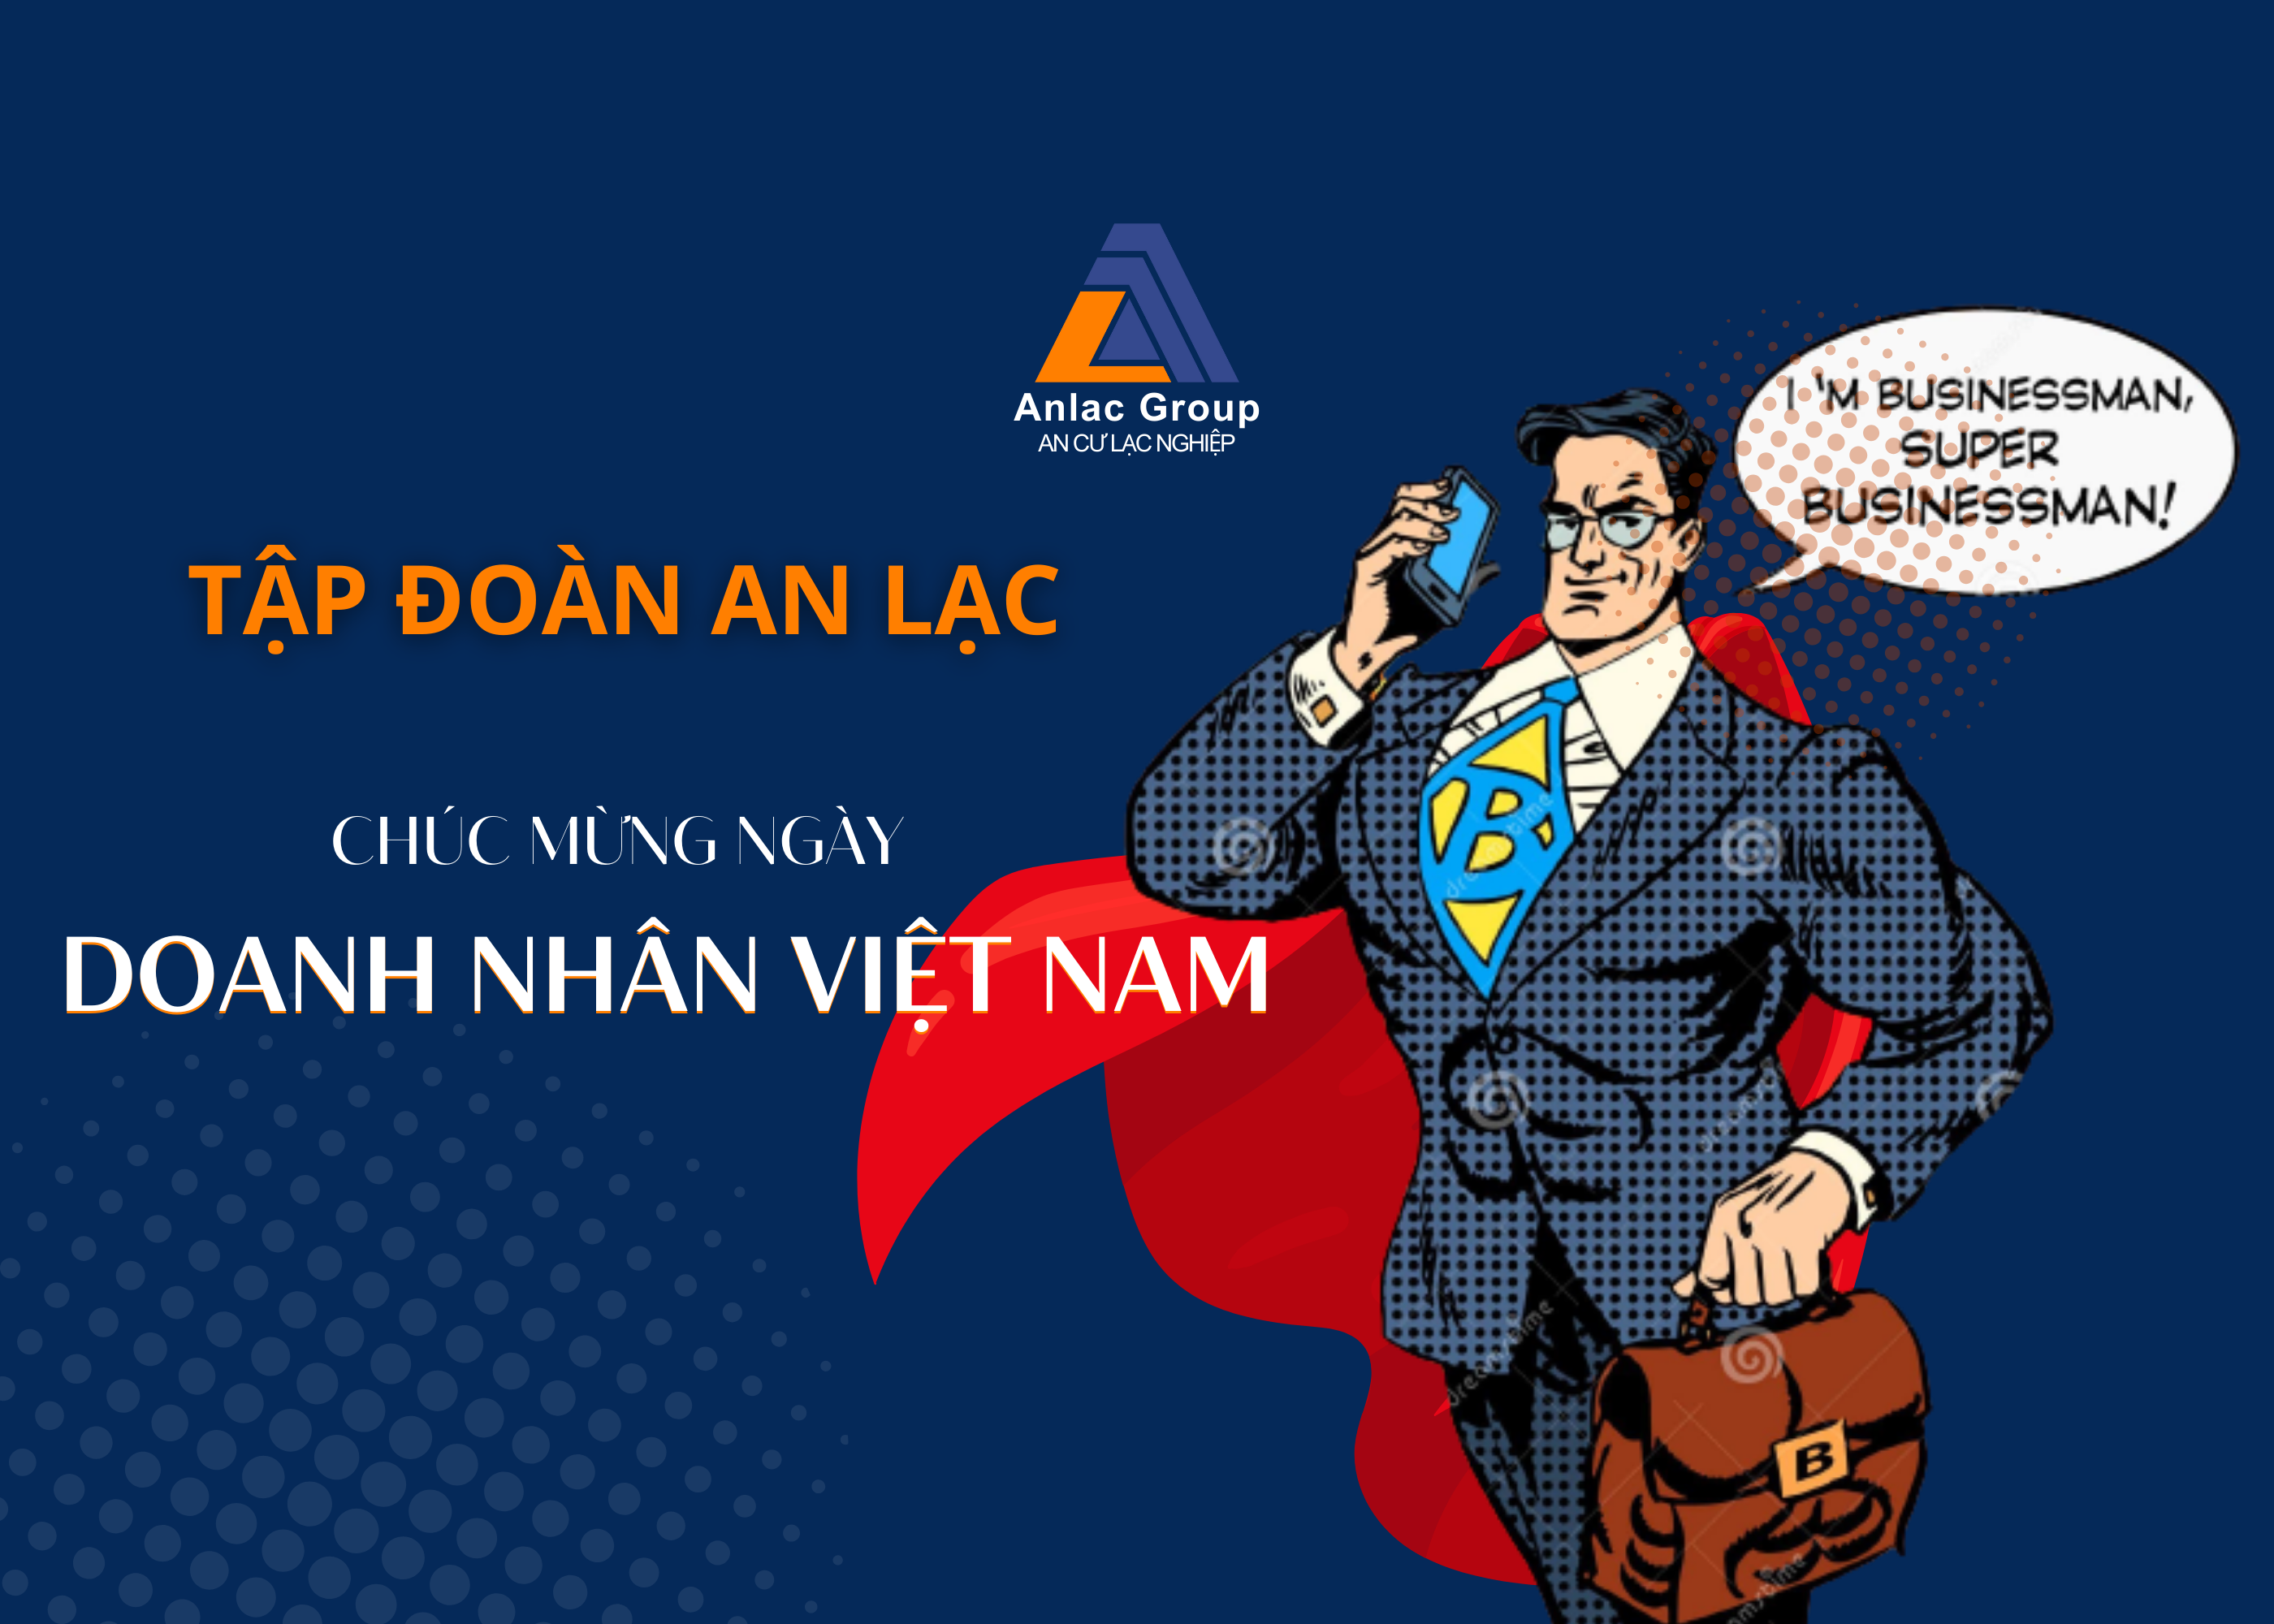 Vai trò, sứ mệnh của doanh nhân Việt Nam